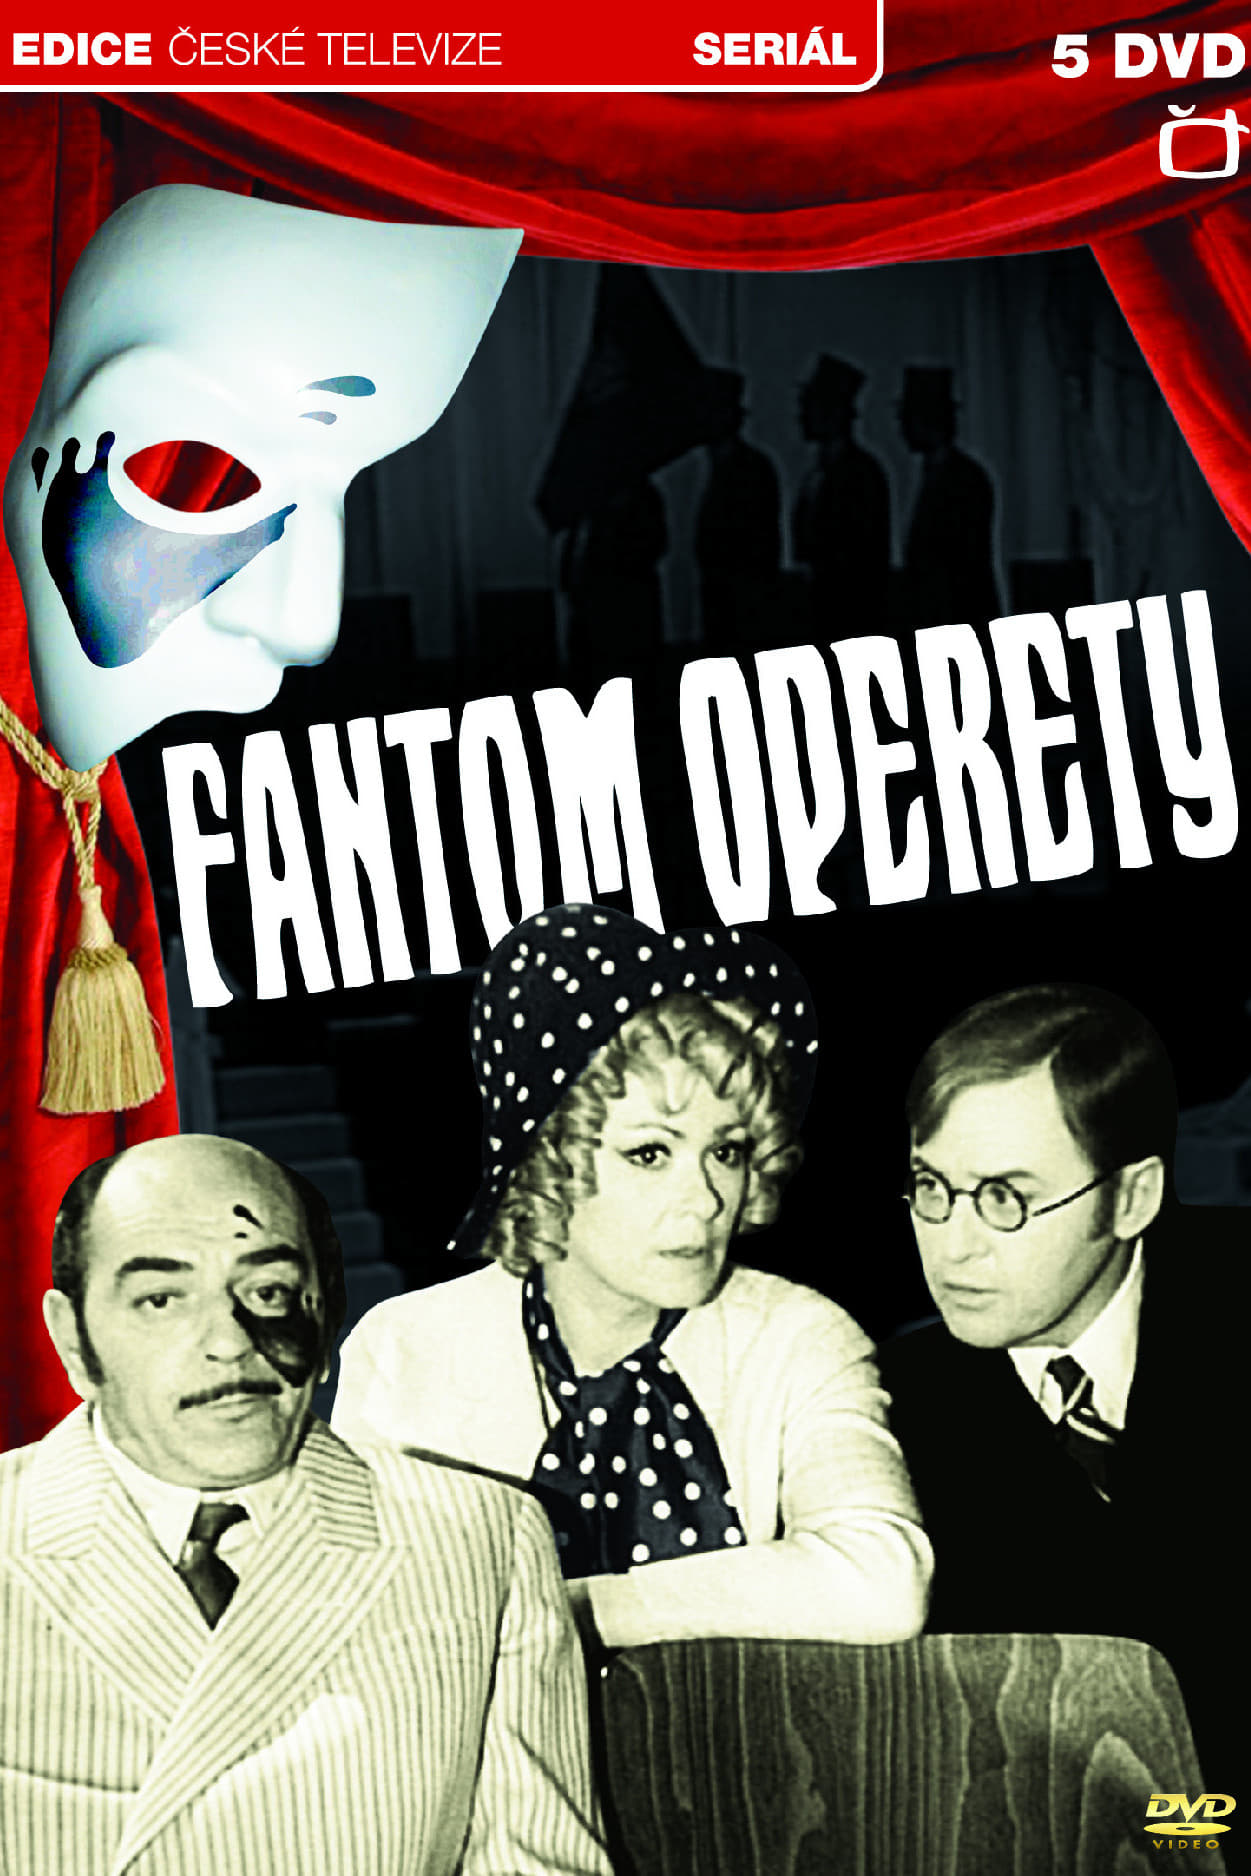 Fantom operety